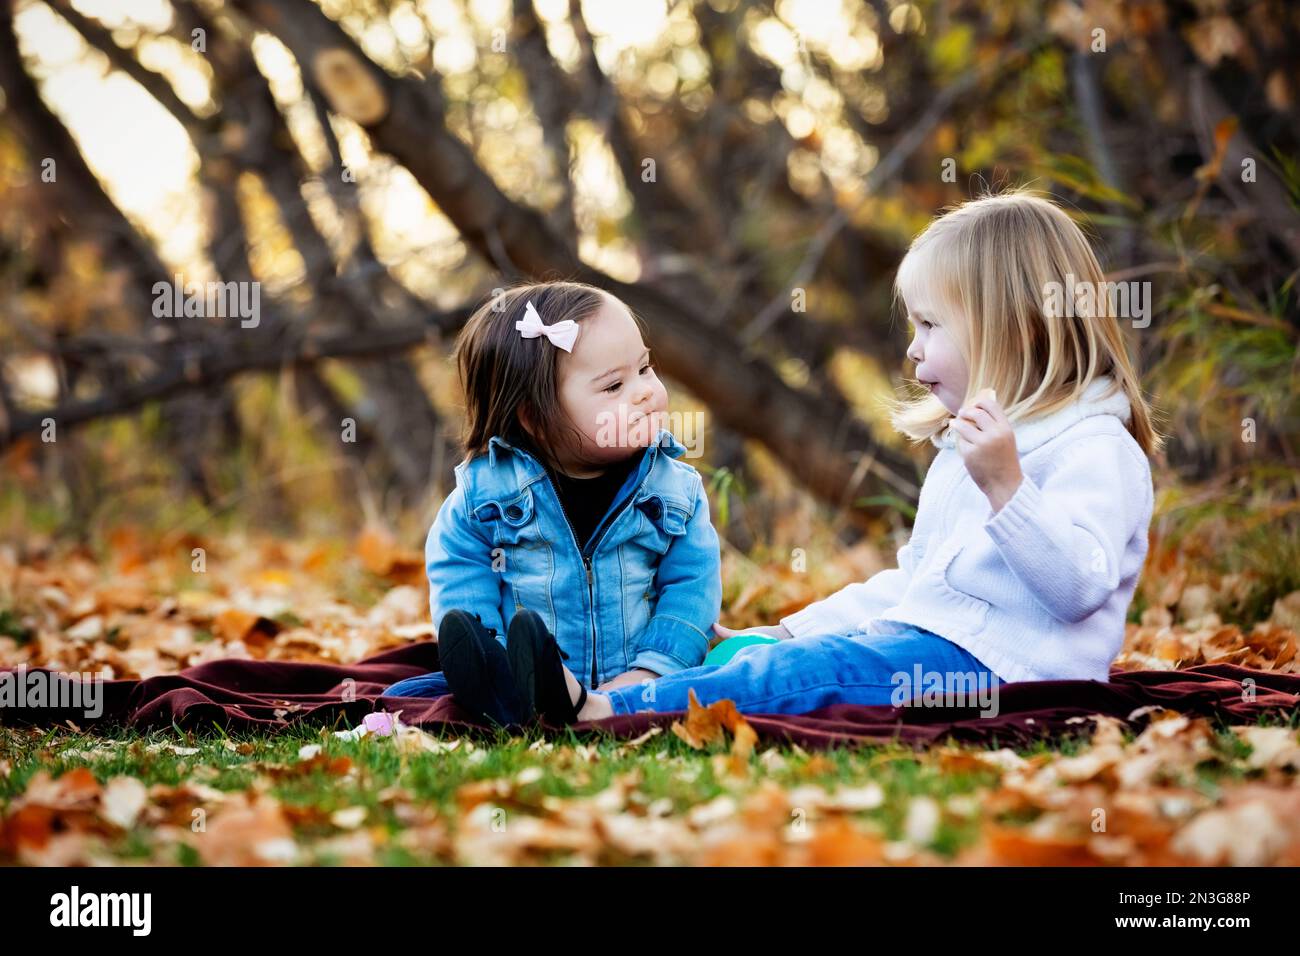 Deux jeunes sœurs, une avec le syndrome de Down, jouant ensemble dans un parc de la ville pendant la saison d'automne; St. Albert, Alberta, Canada Banque D'Images